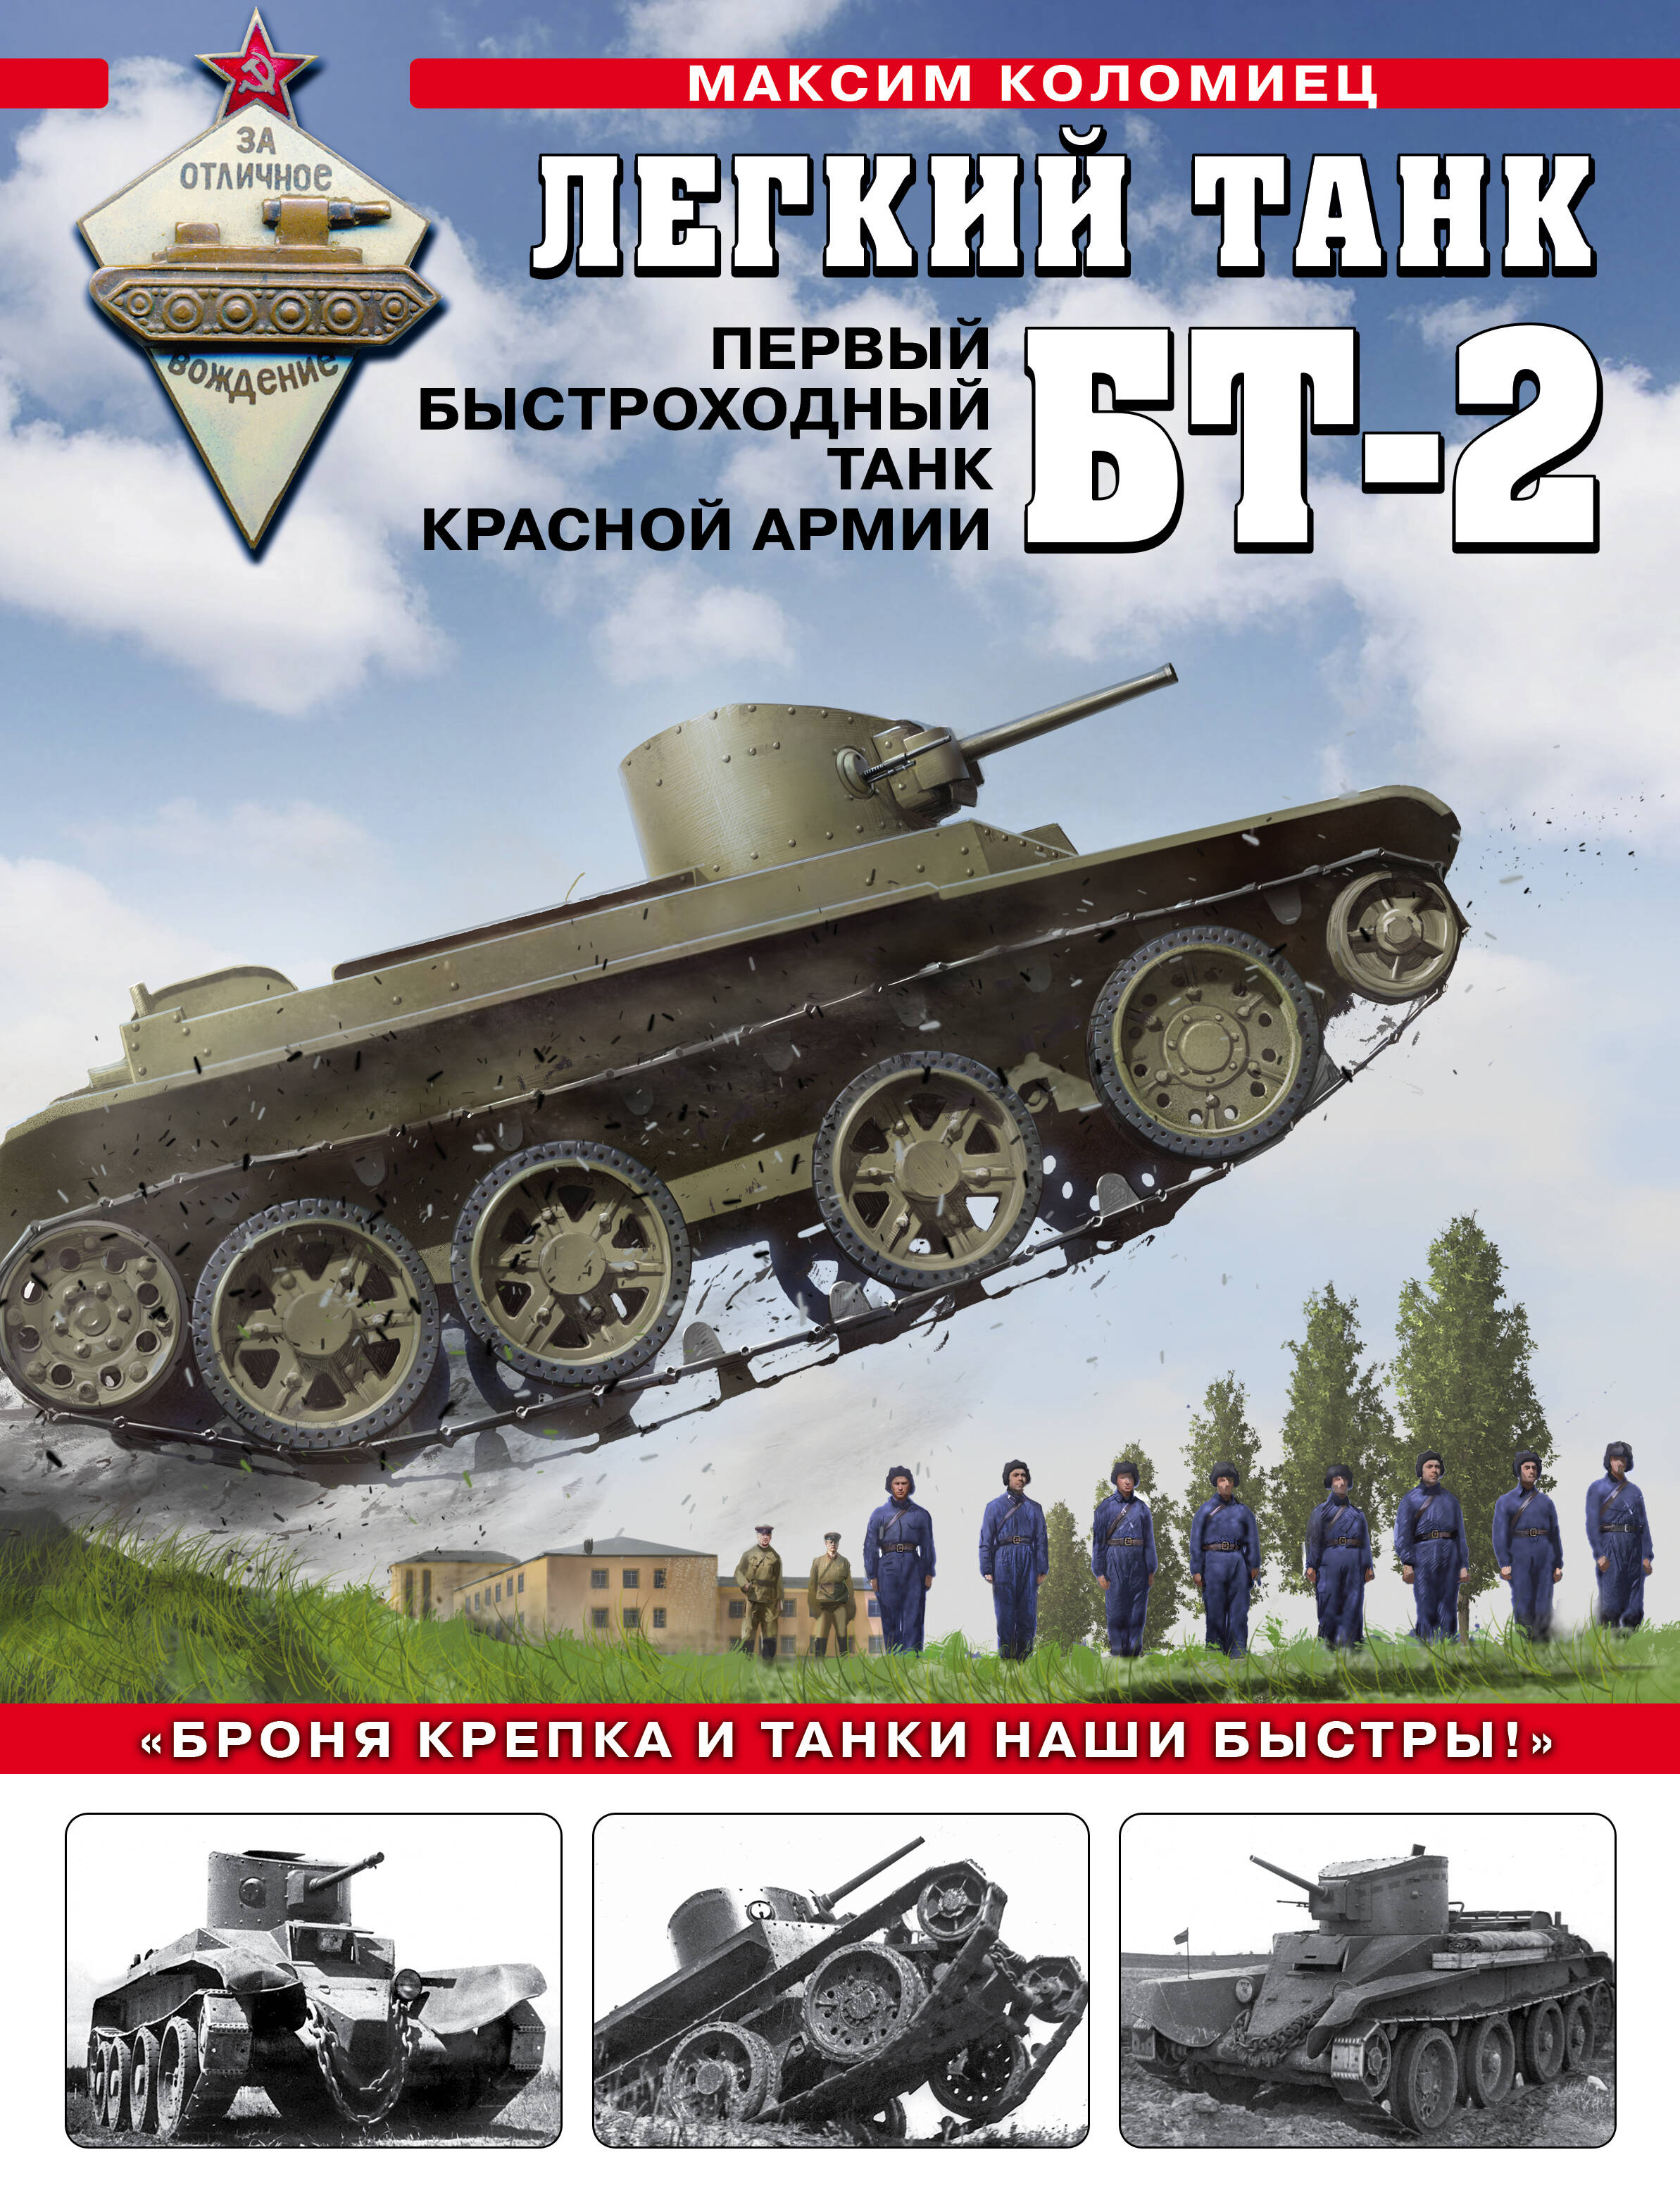 Легкий танк БТ-2. Первый быстроходный танк Красной Армии легкий танк бт 2 первый быстроходный танк красной армии коломиец м в